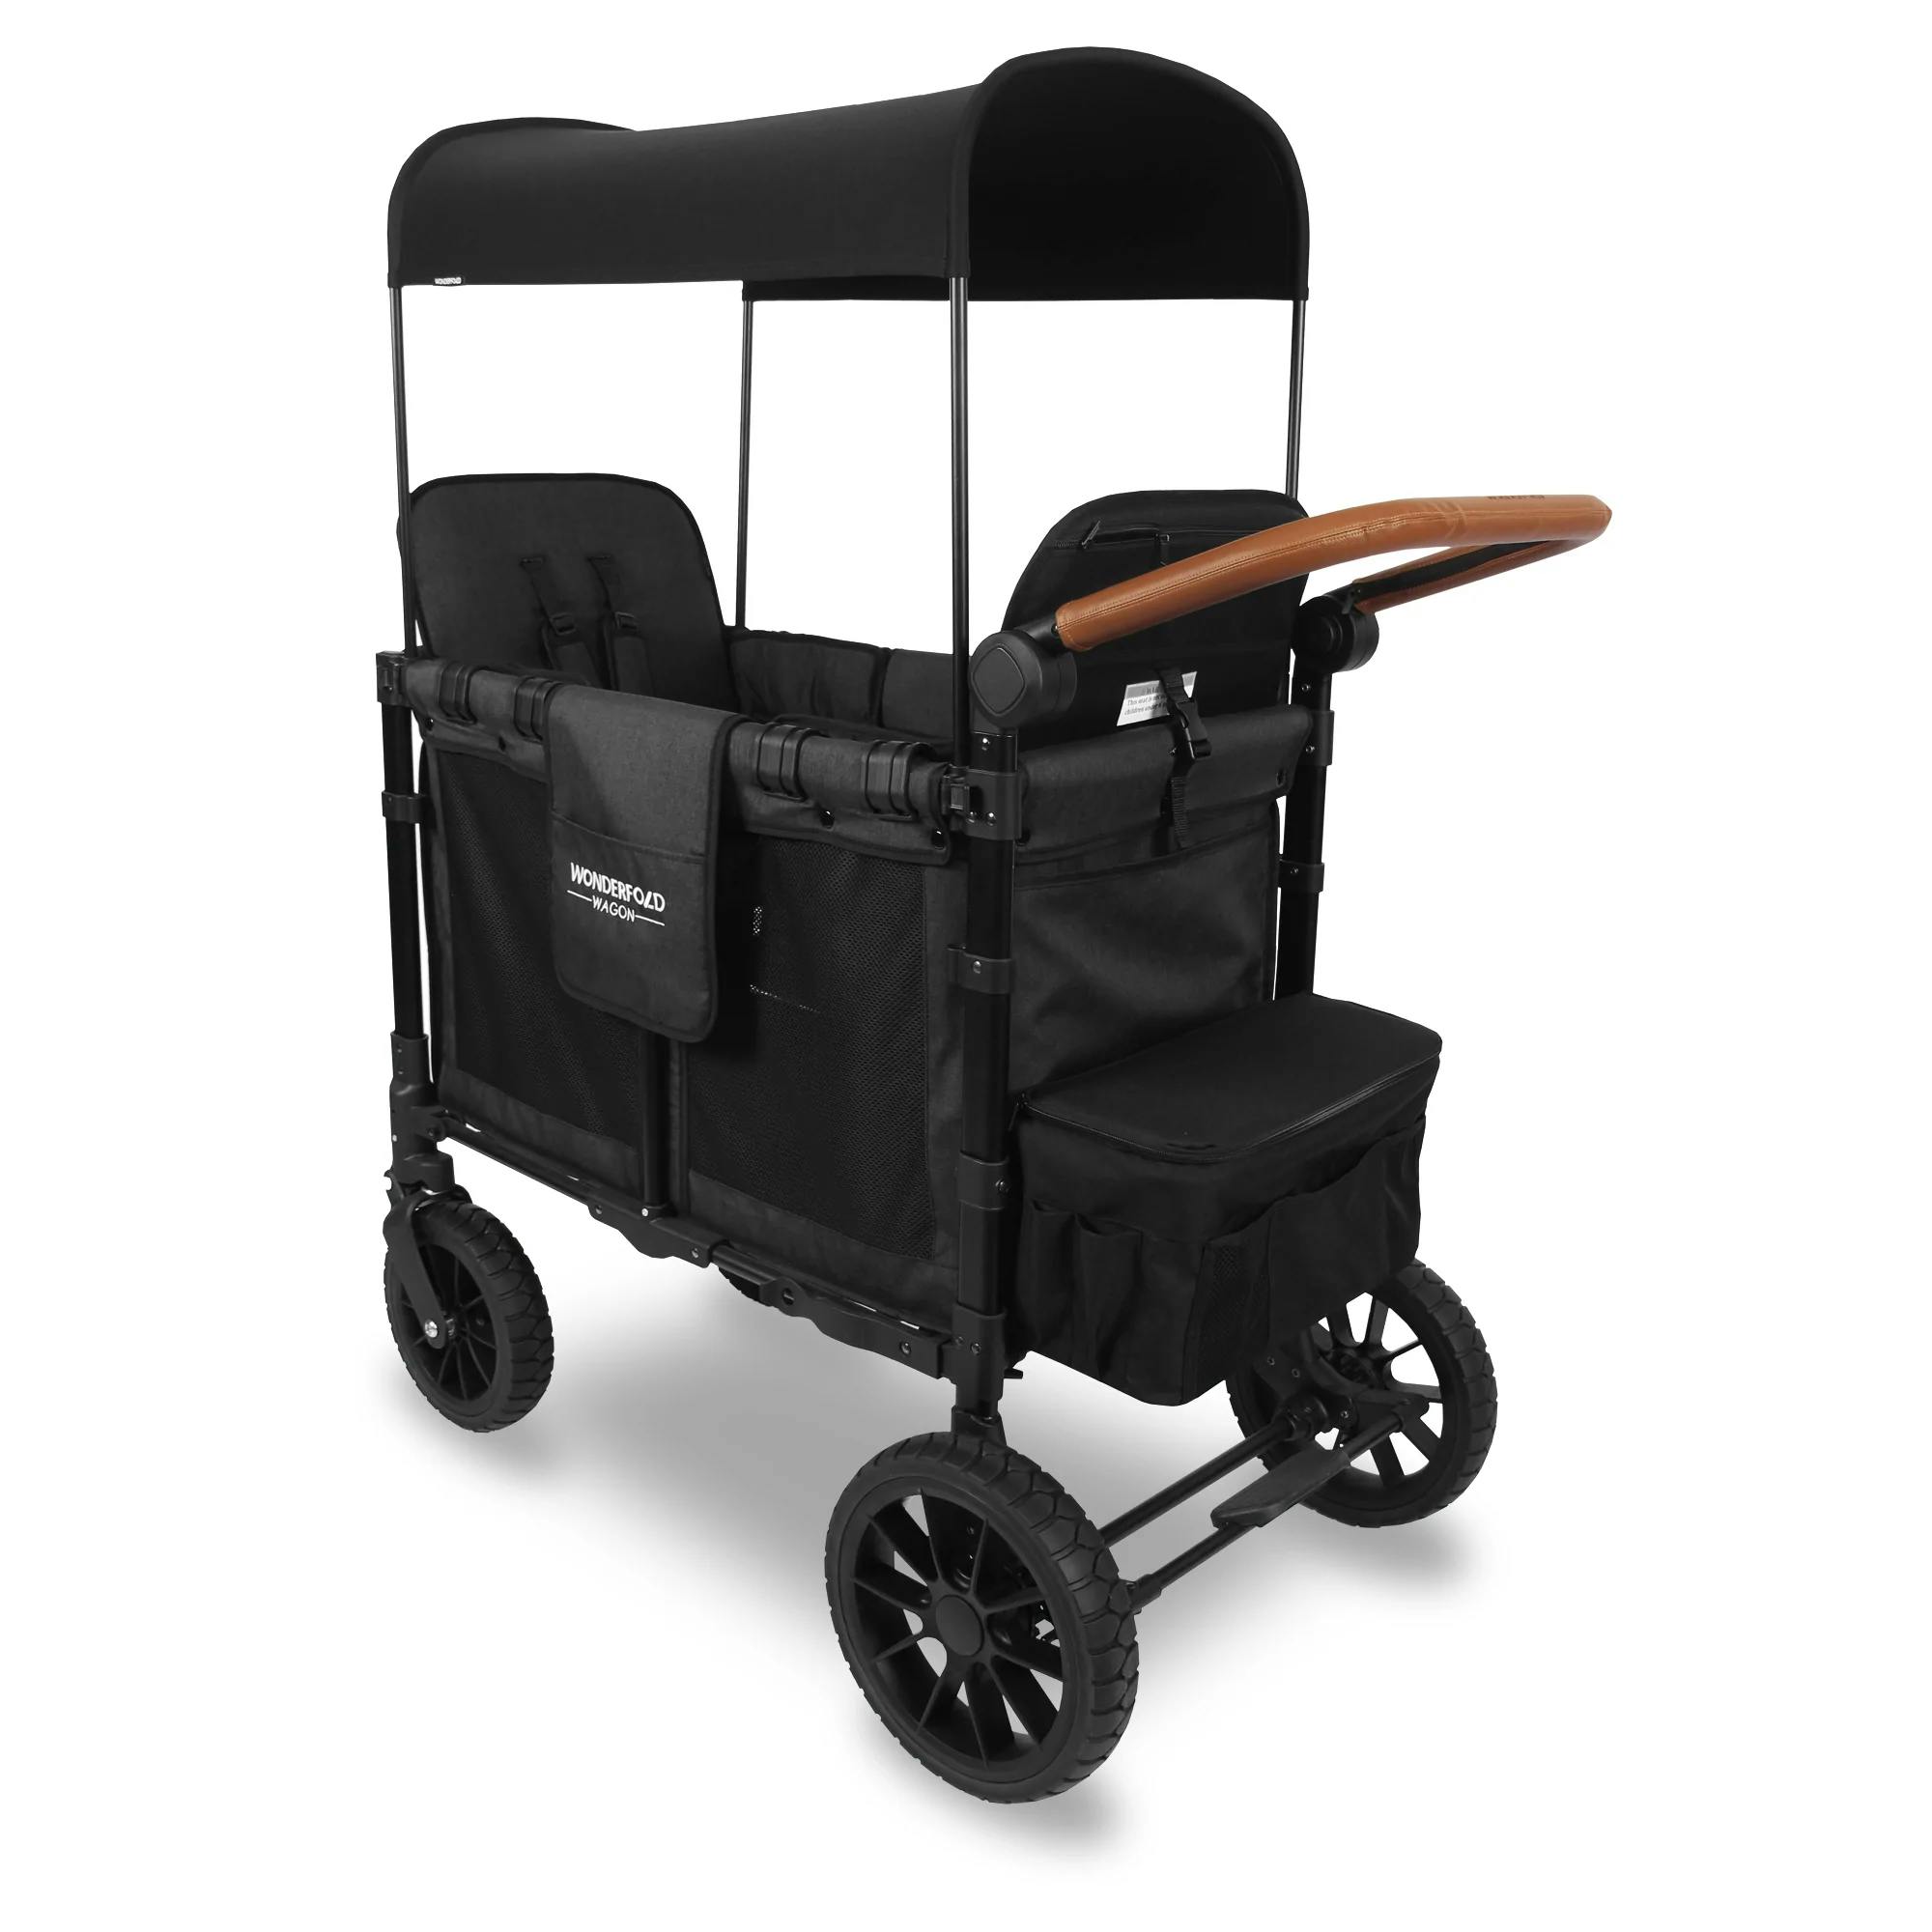 Wonderfold W2 Luxe Stroller Wagon · Charcoal Black